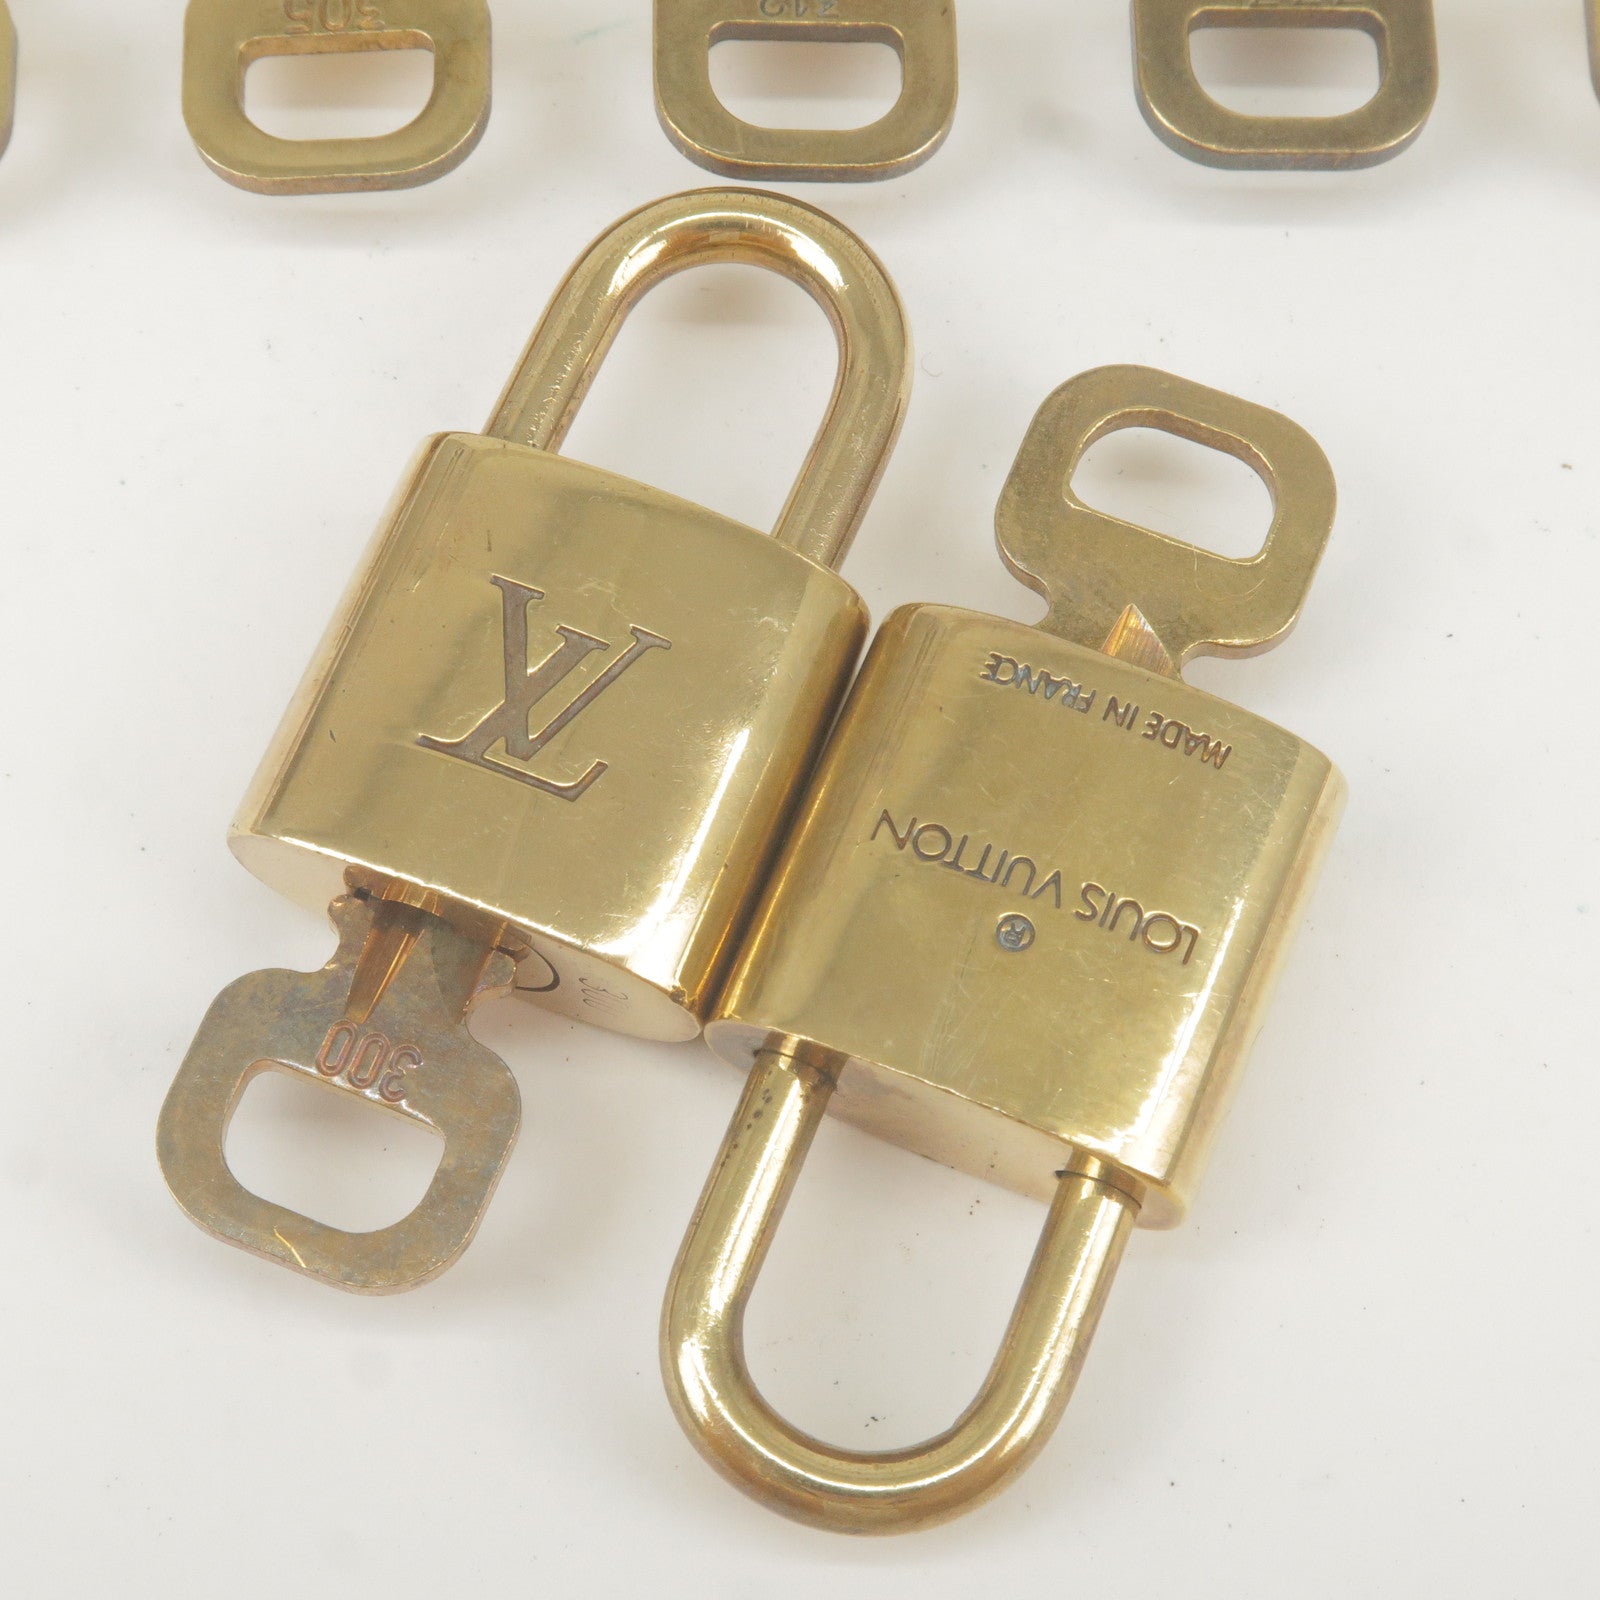  Louis Vuitton Cadena Padlock with Keys, Set of 30